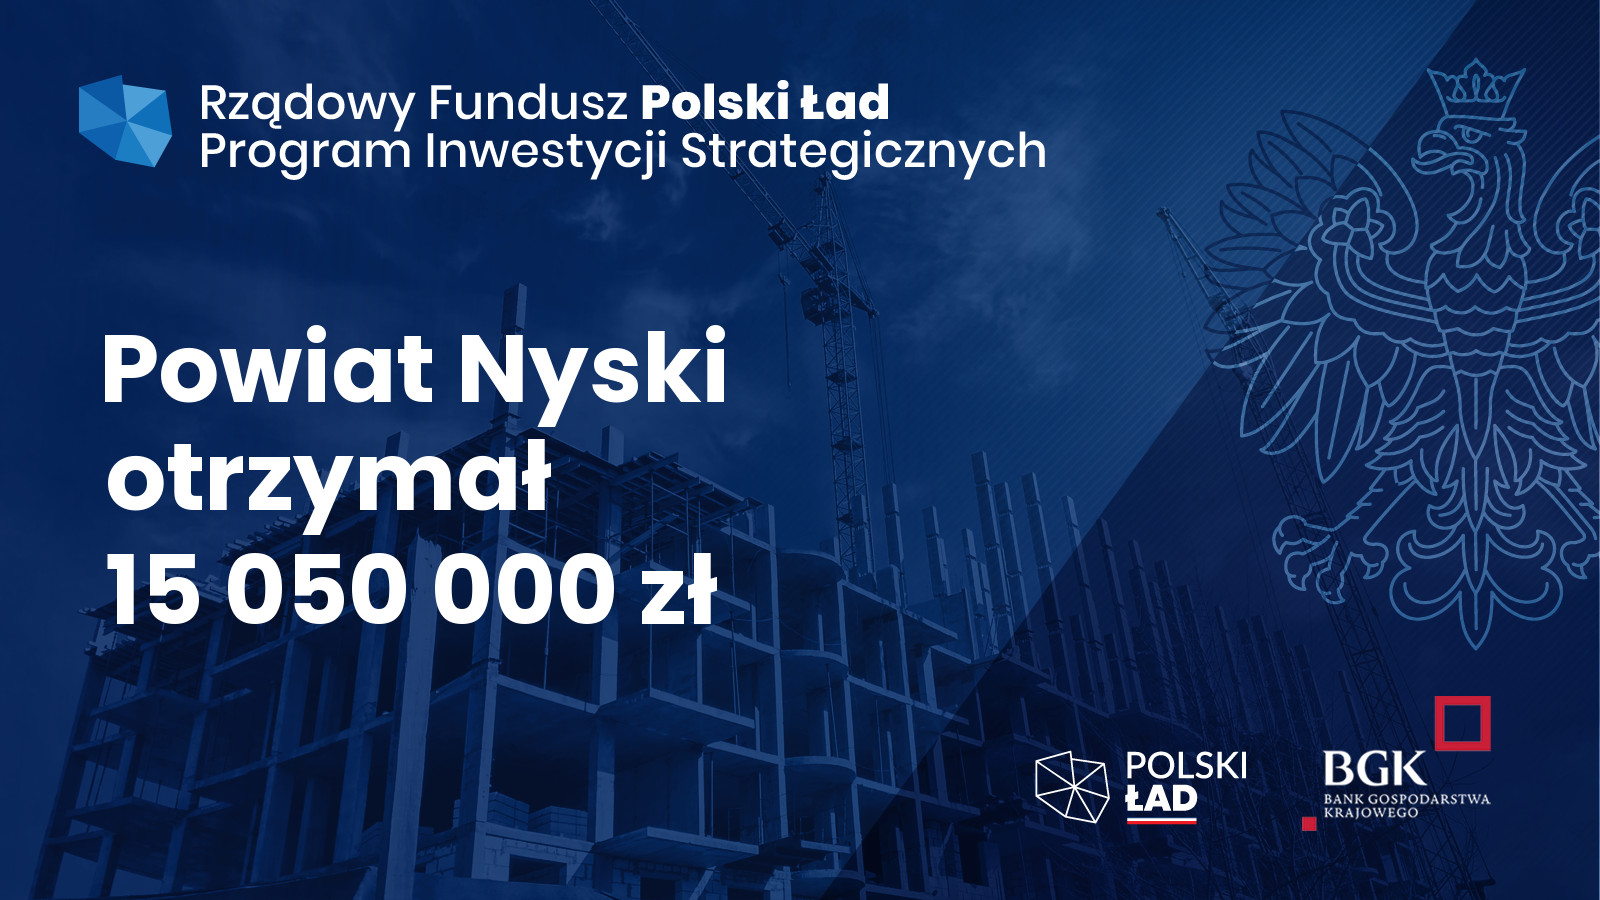 Powiat Nyski otrzymał 15 050 000 zł